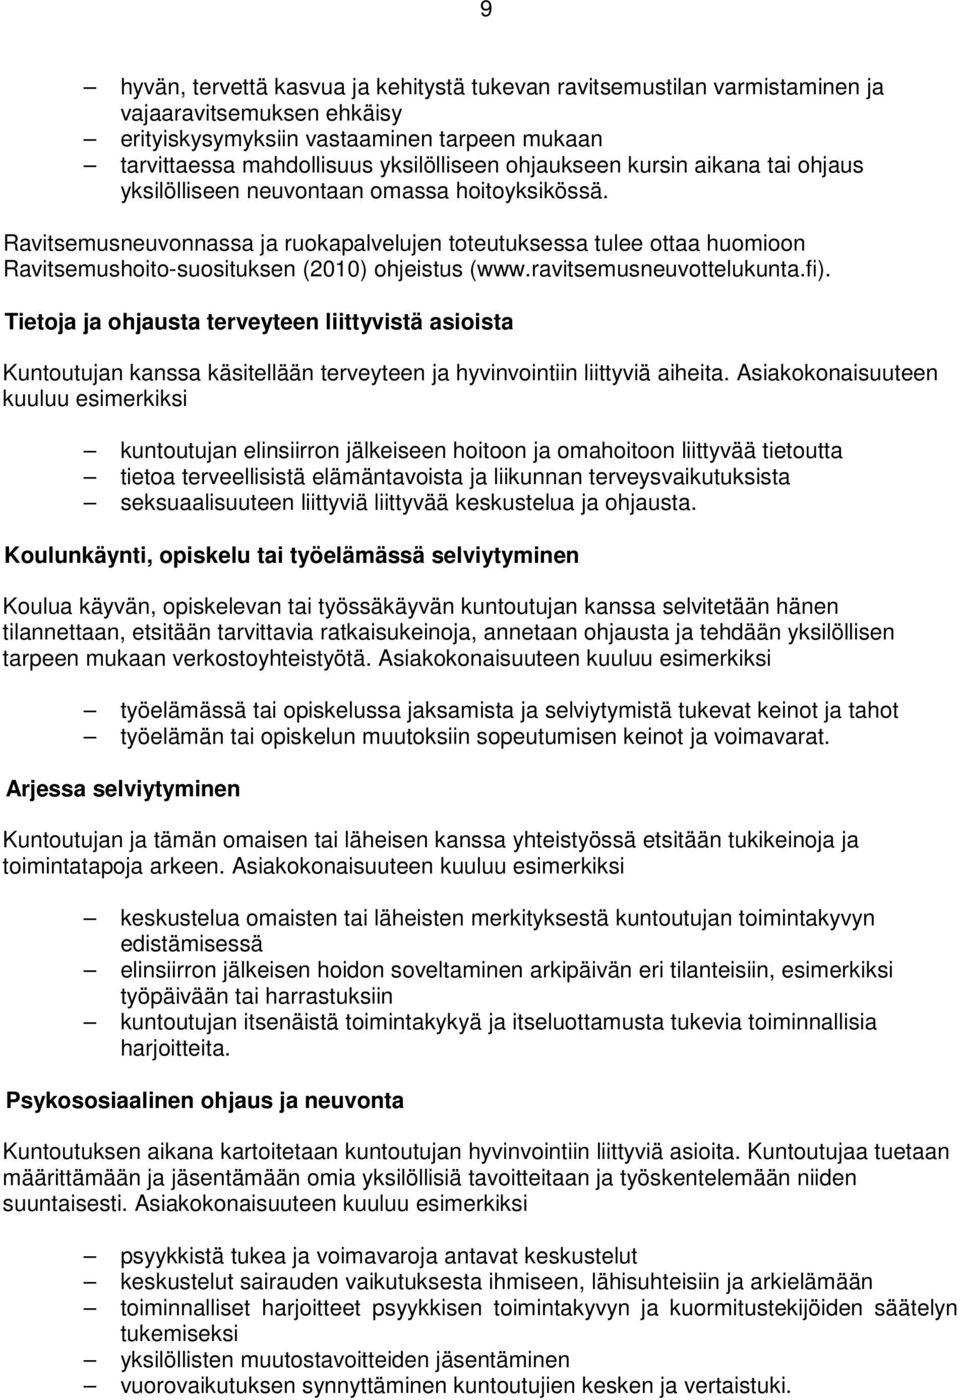 Ravitsemusneuvonnassa ja ruokapalvelujen toteutuksessa tulee ottaa huomioon Ravitsemushoito-suosituksen (2010) ohjeistus (www.ravitsemusneuvottelukunta.fi).